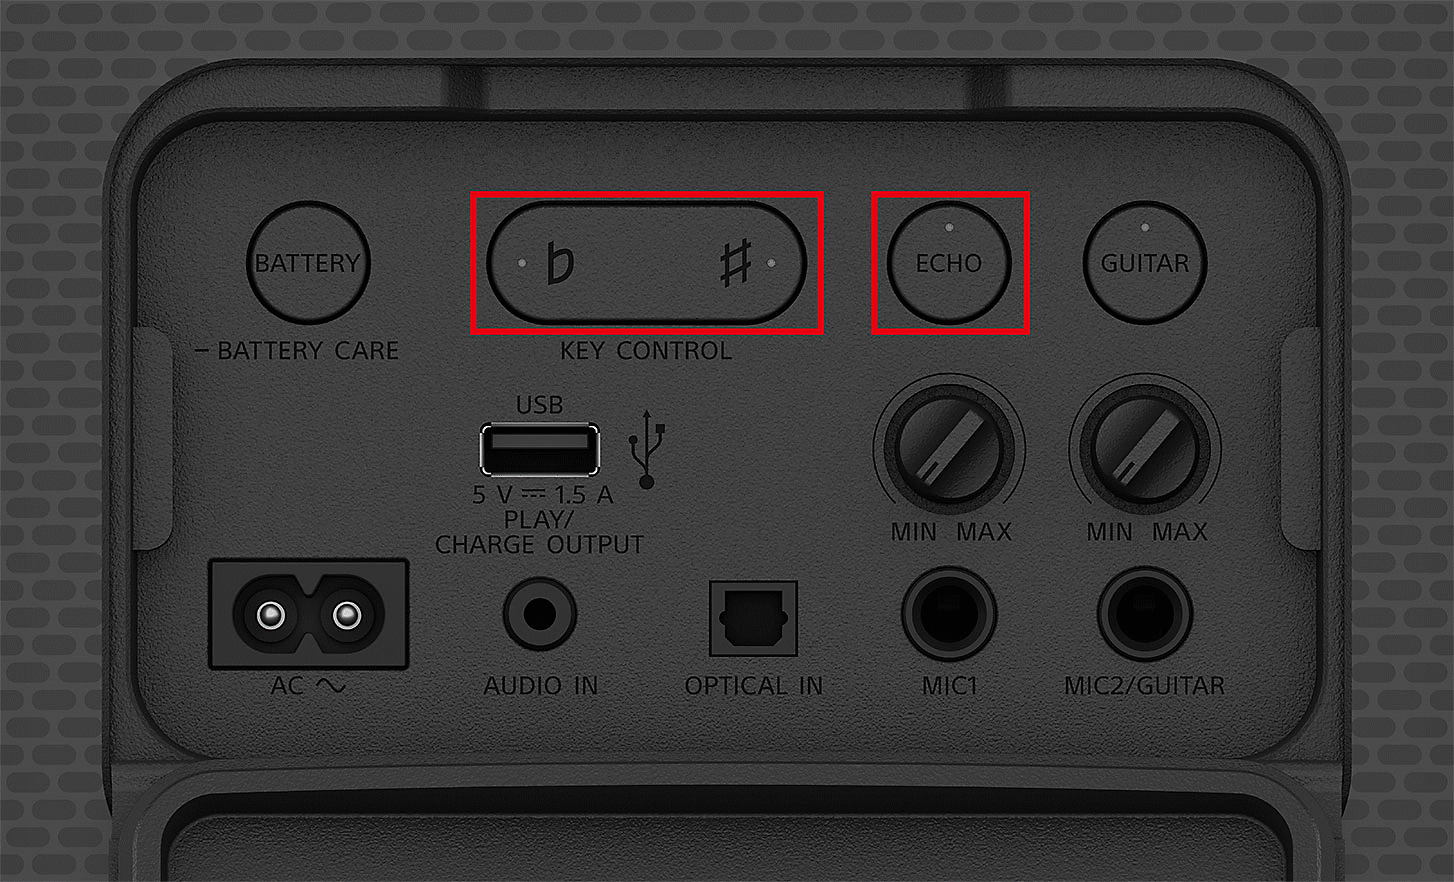 Imagen en primer plano del panel de control del SRS-XV800. Los botones de eco y control de la tonalidad están resaltados mediante cuadros rojos